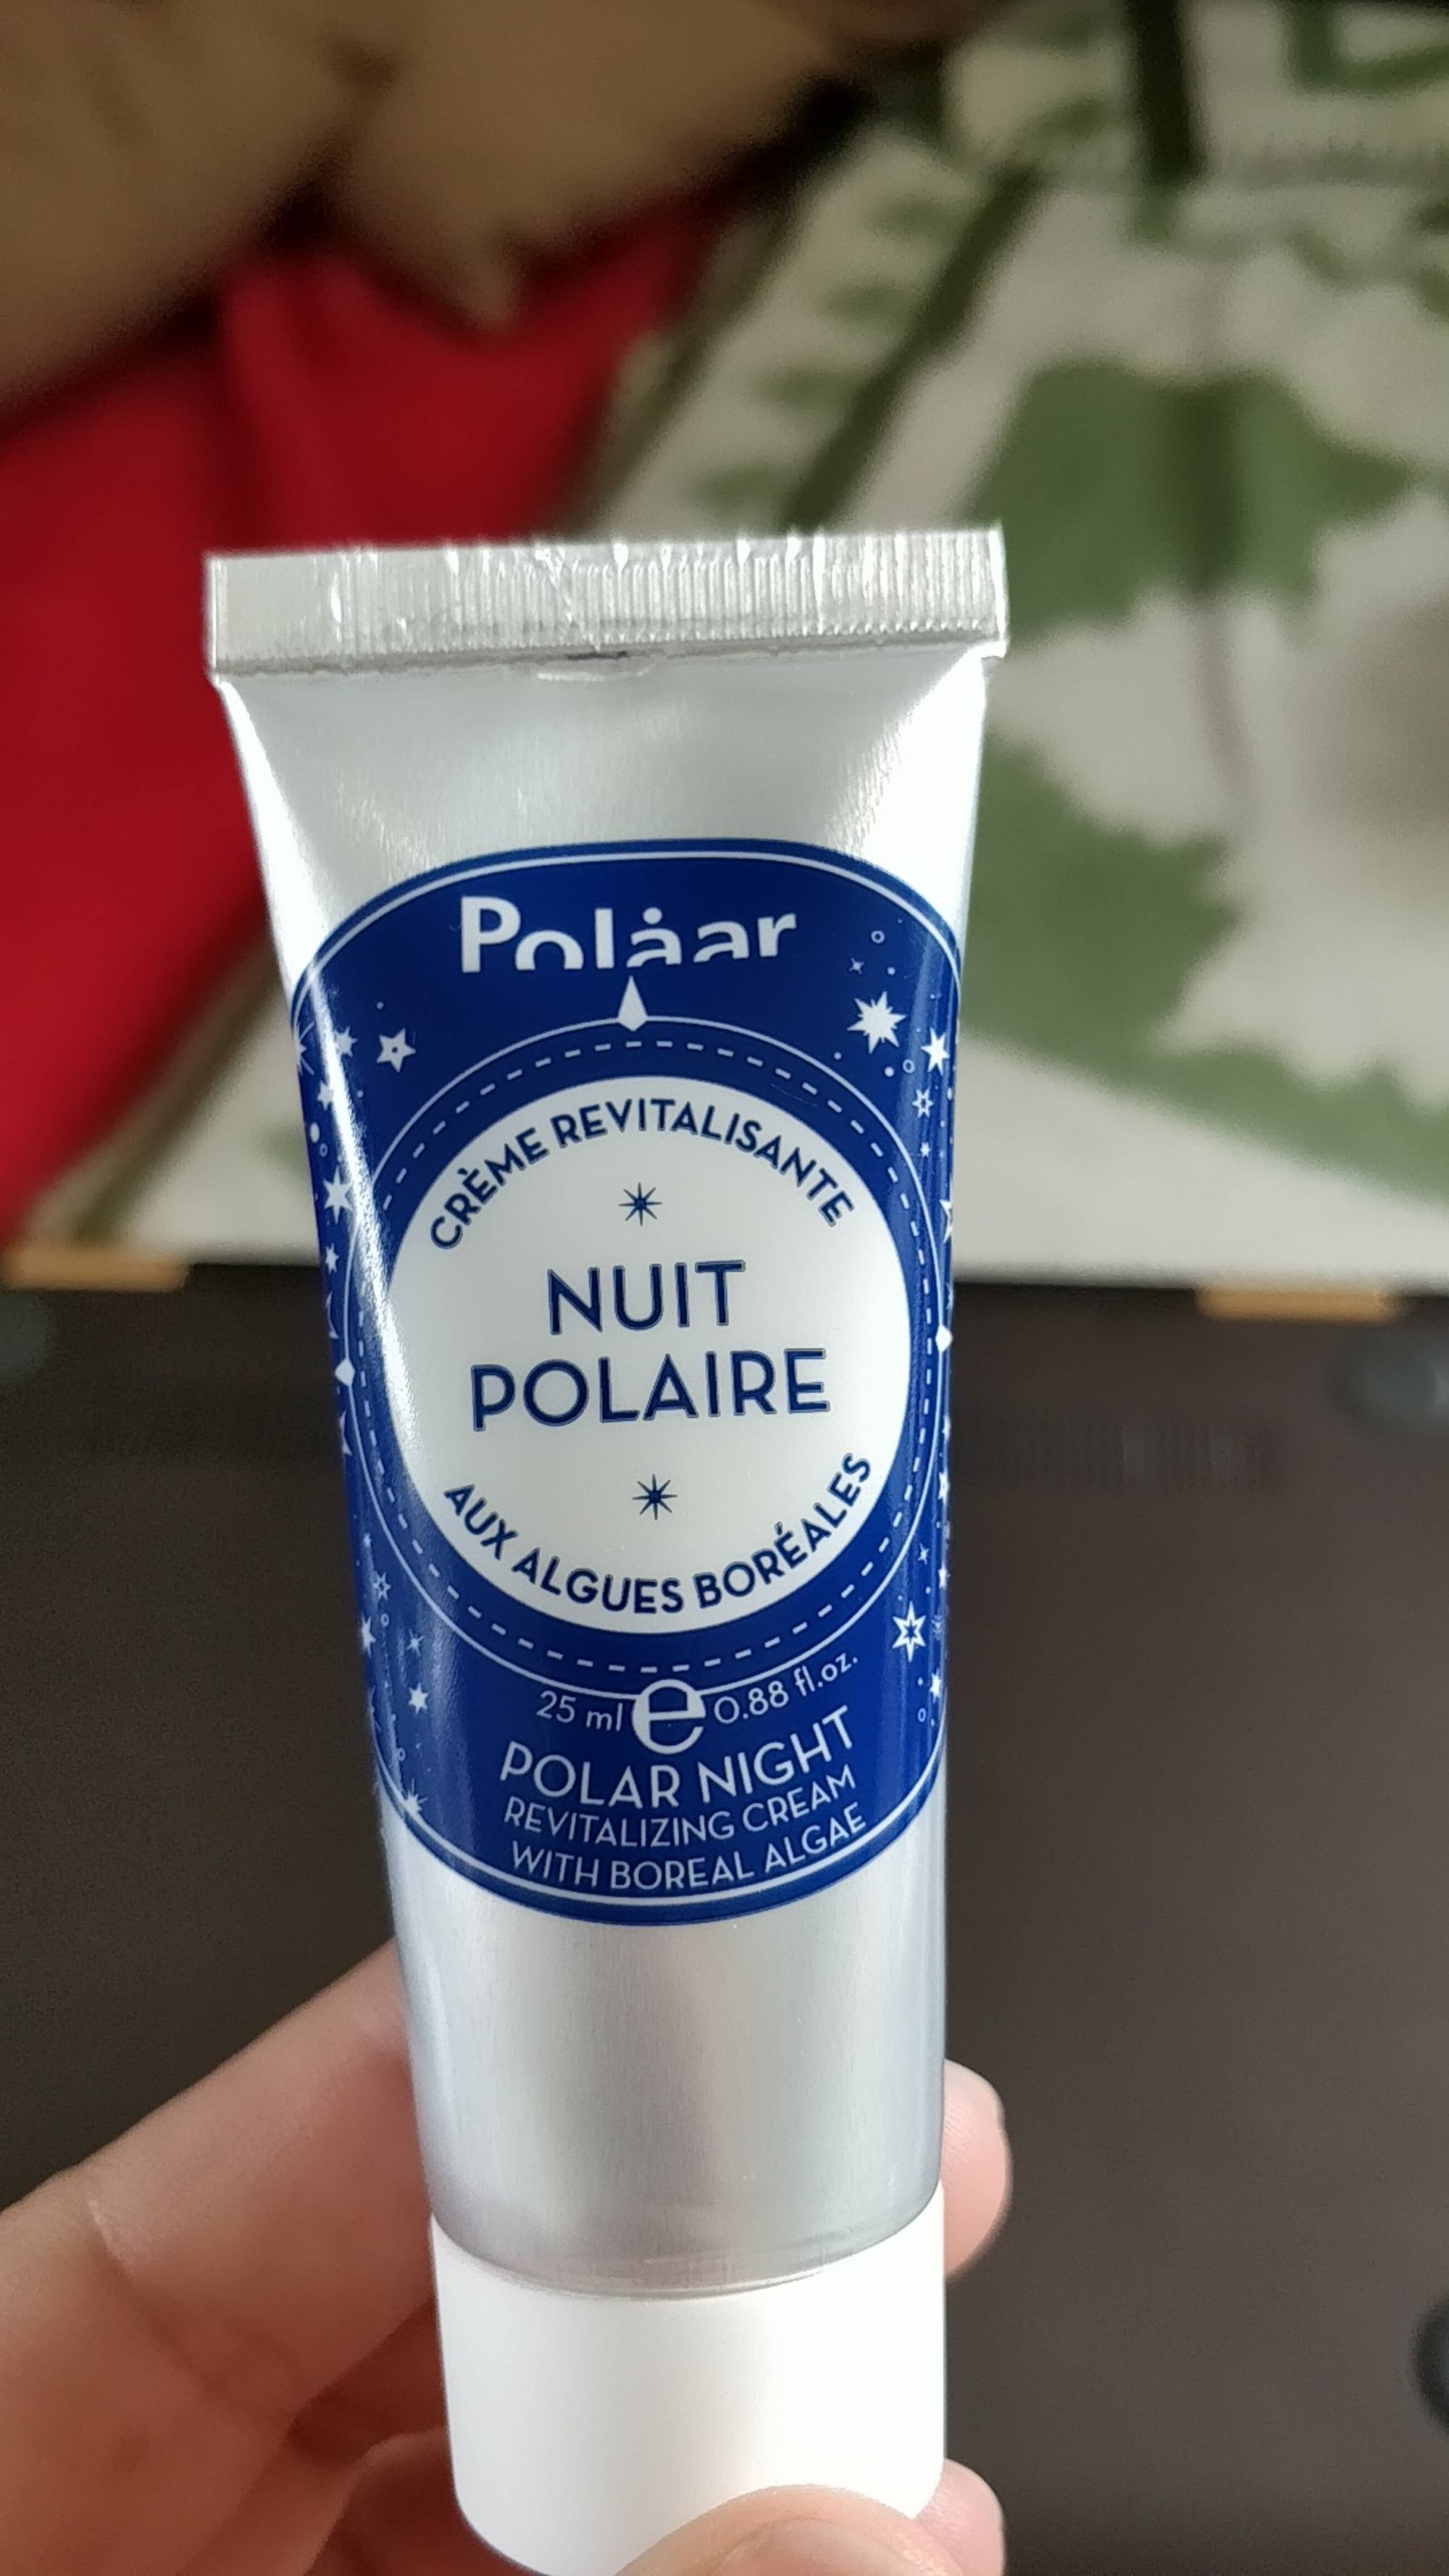 POLAAR - Nuit polaire - Crème revitalisante aux algues boréales   